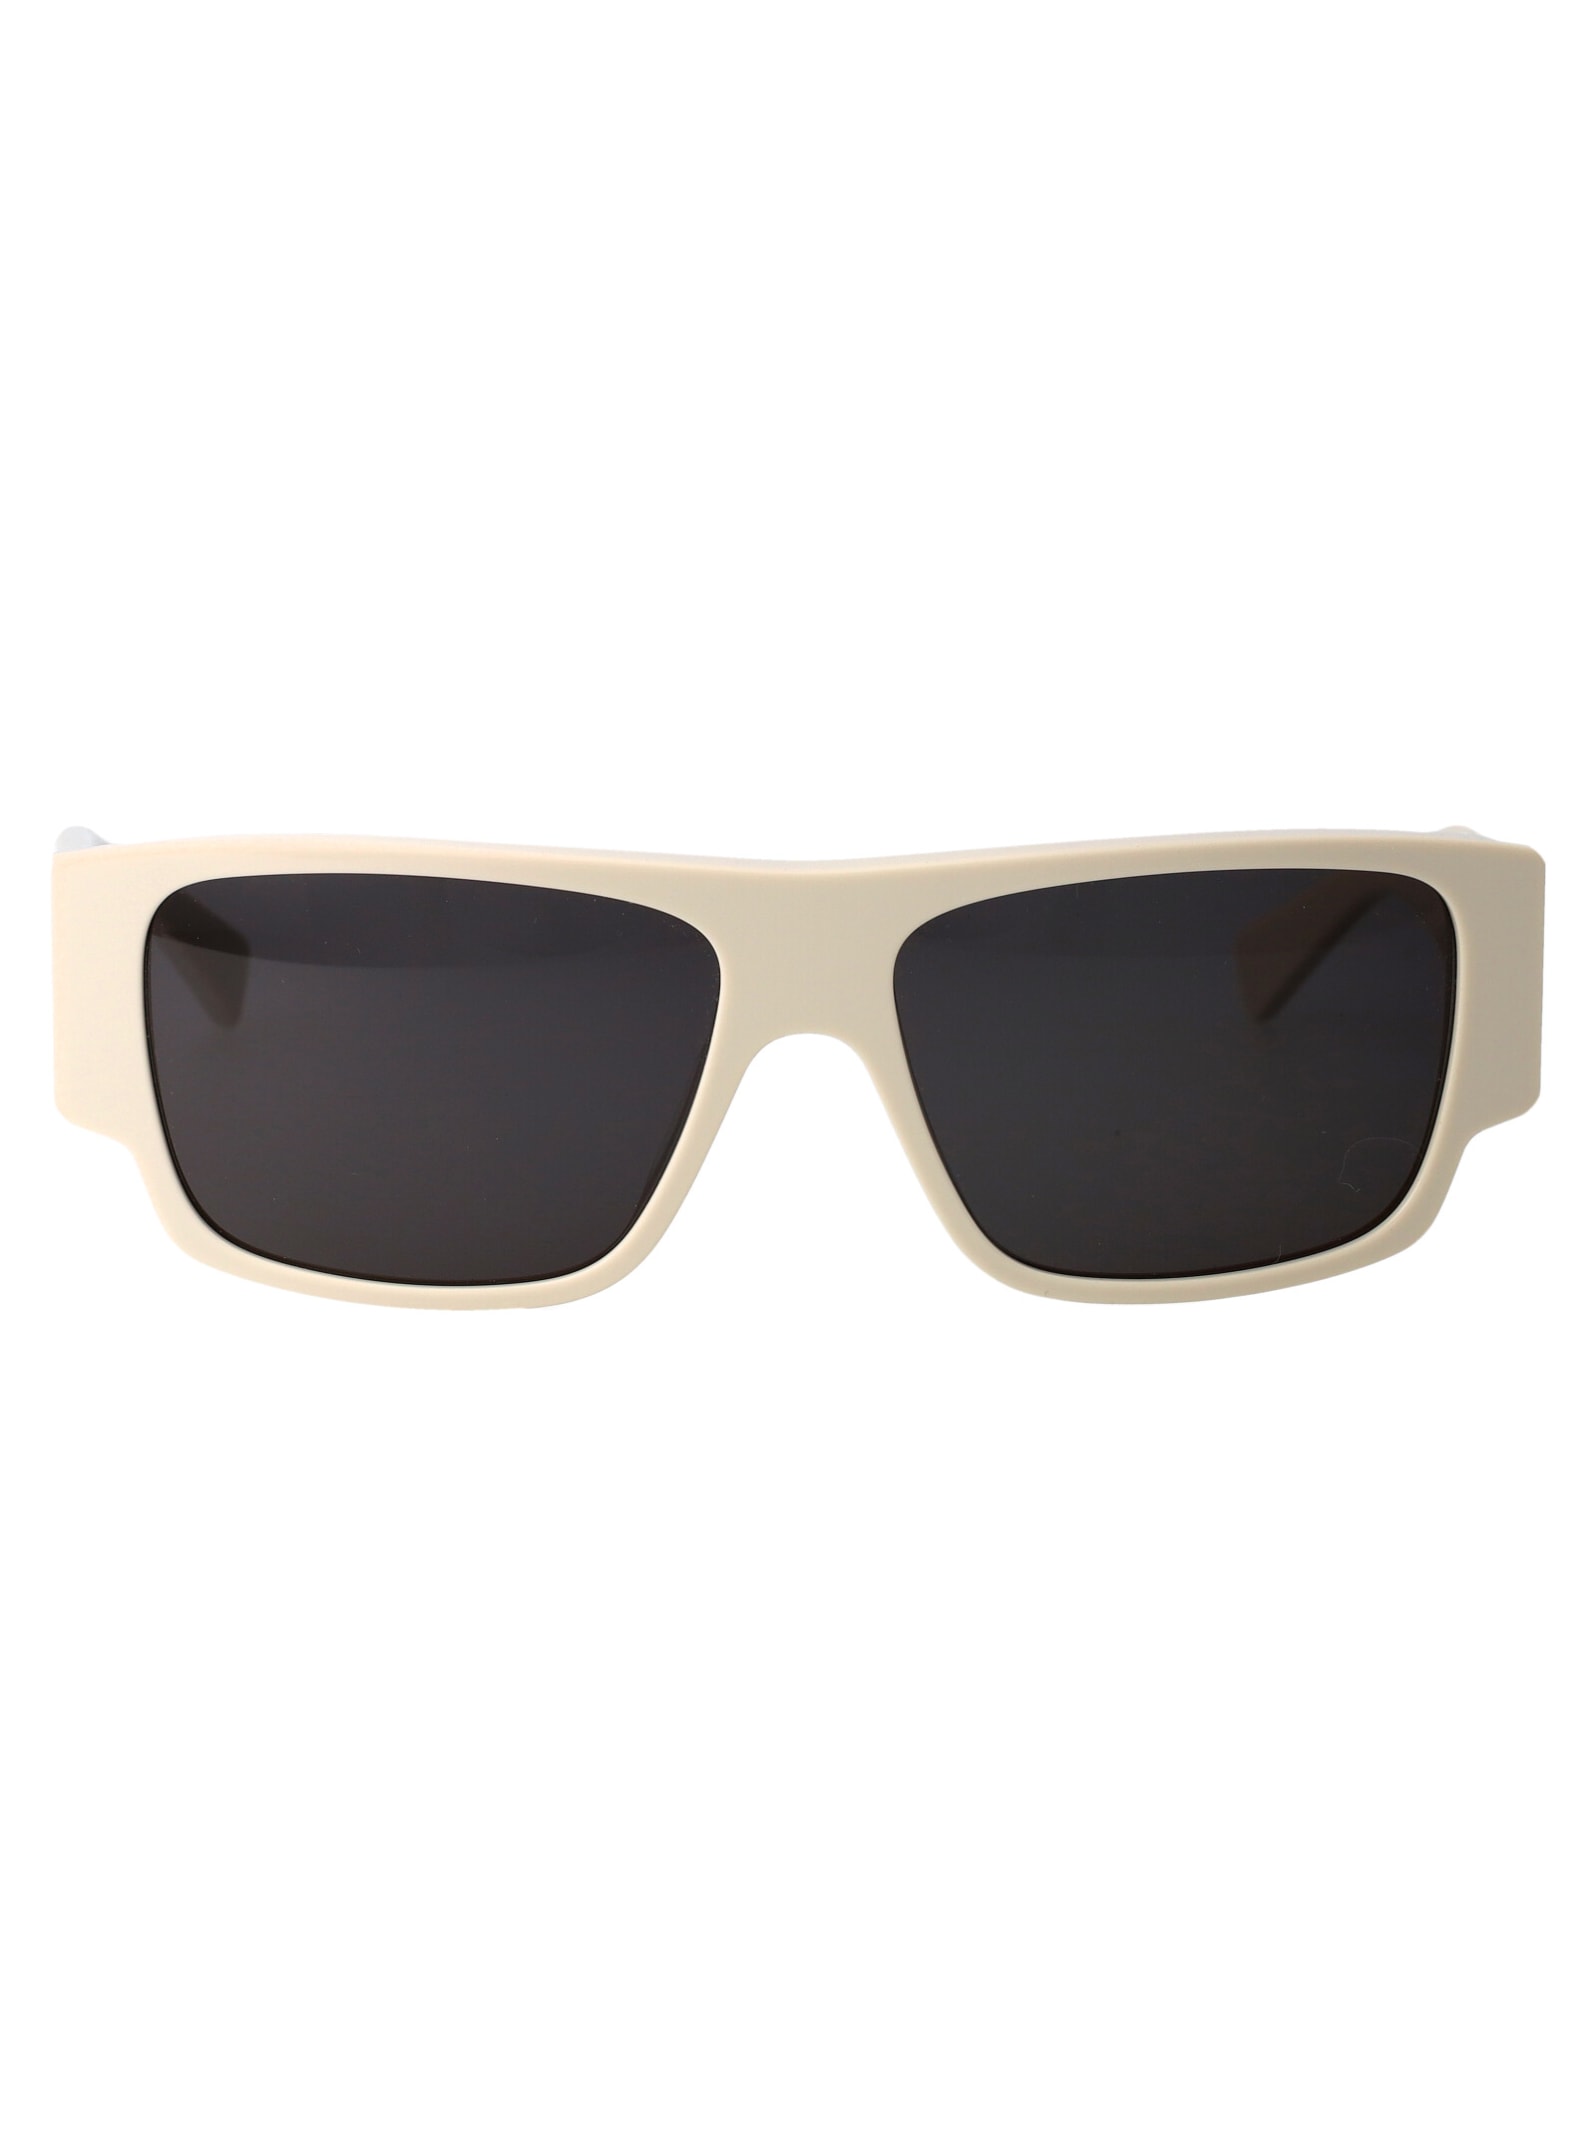 Bv1286s Sunglasses